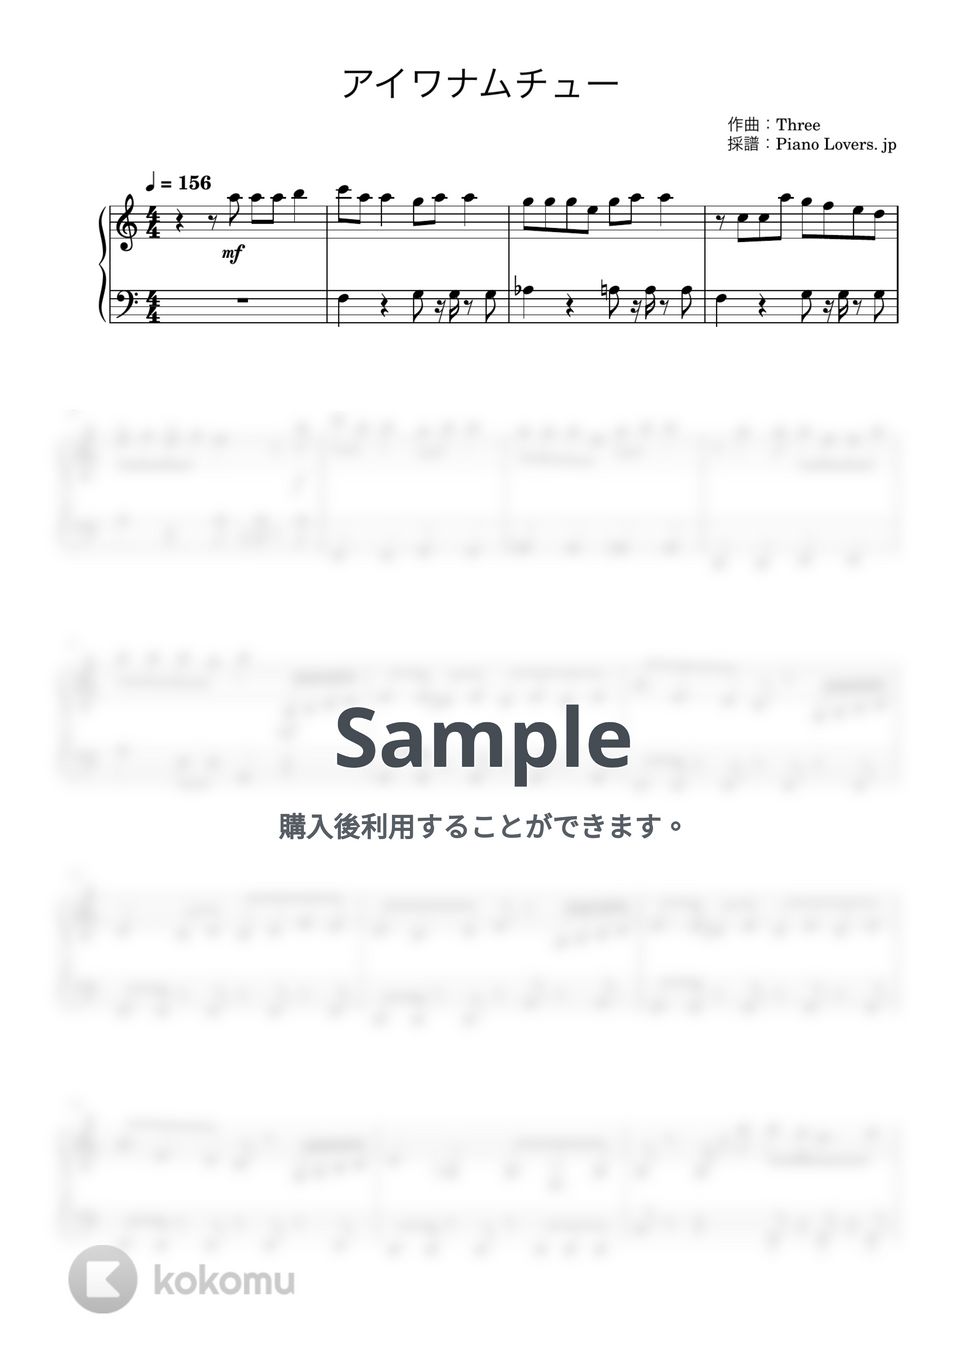 MAISONdes - アイワナムチュー (うる星やつら) by Piano Lovers. jp